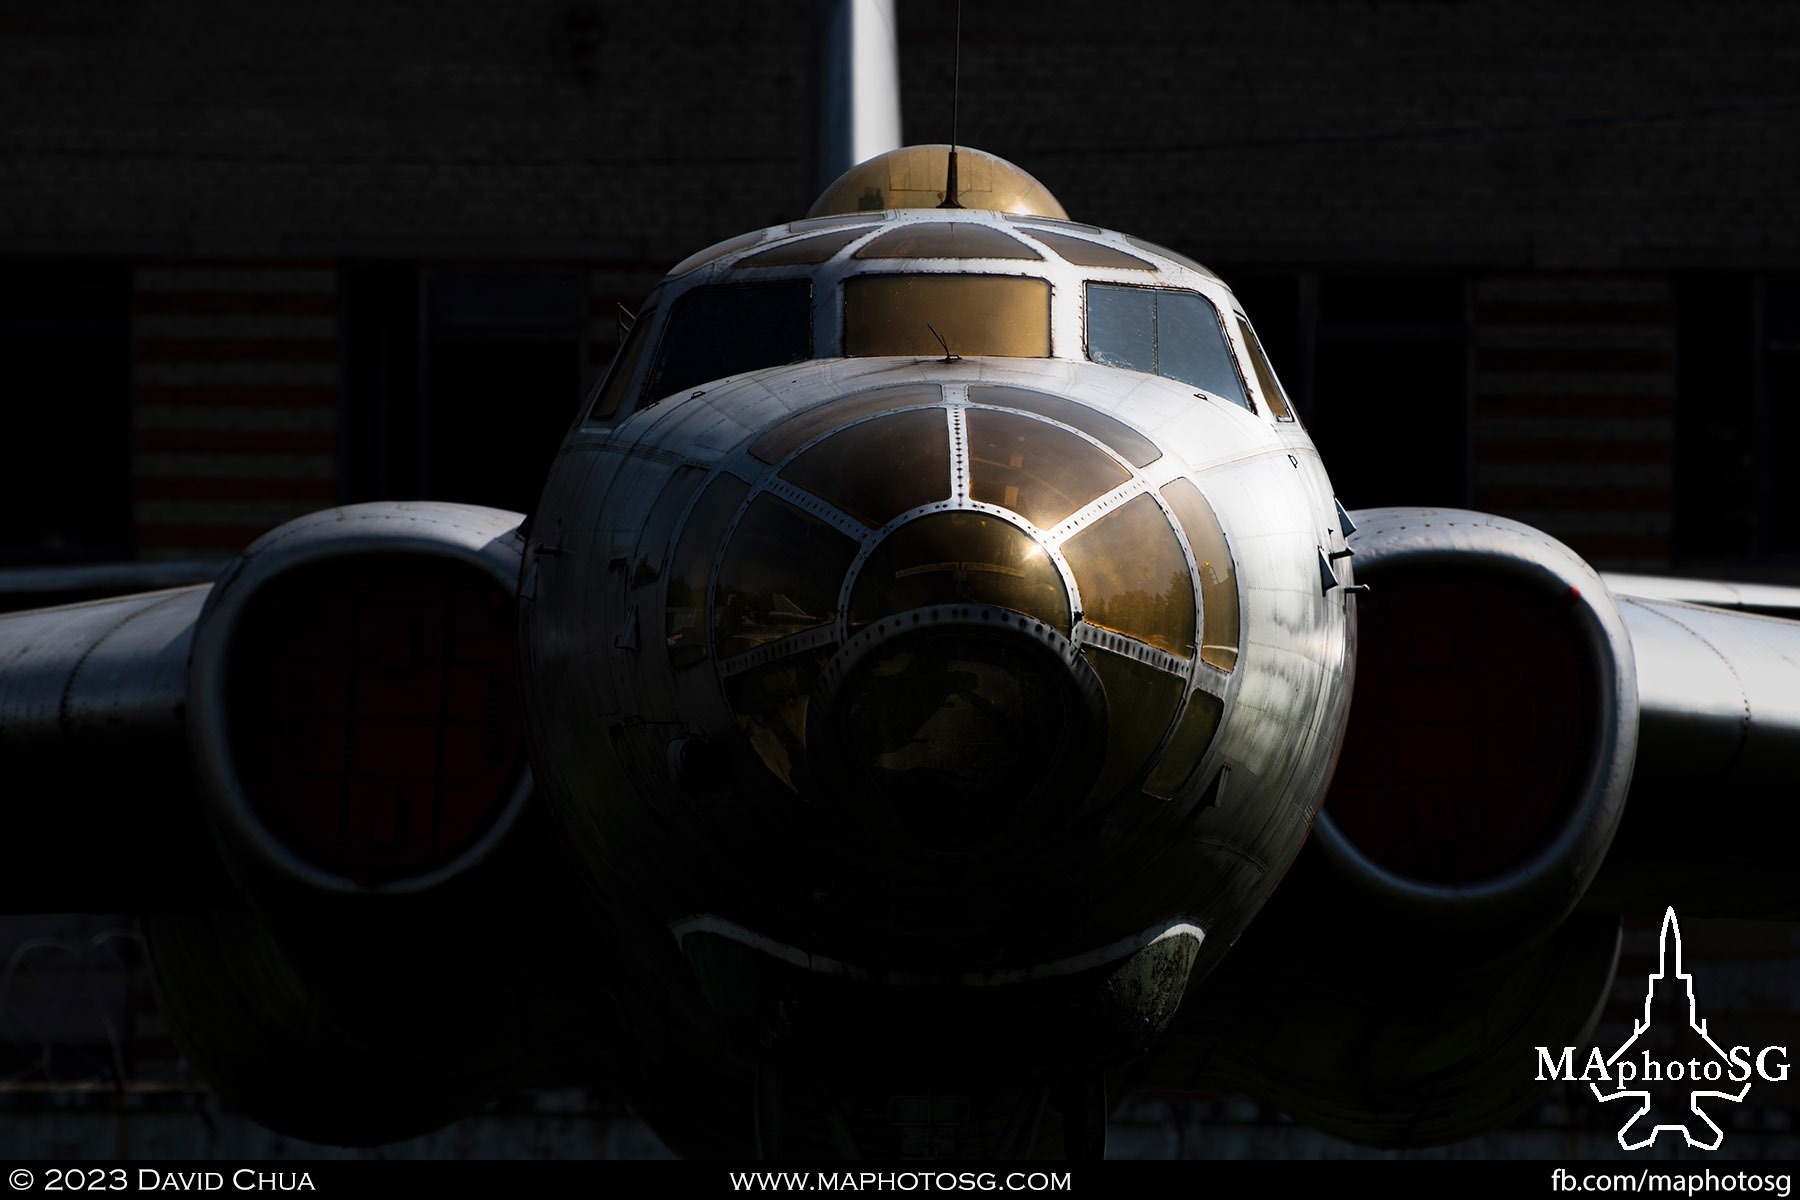 Tupolev Tu-16